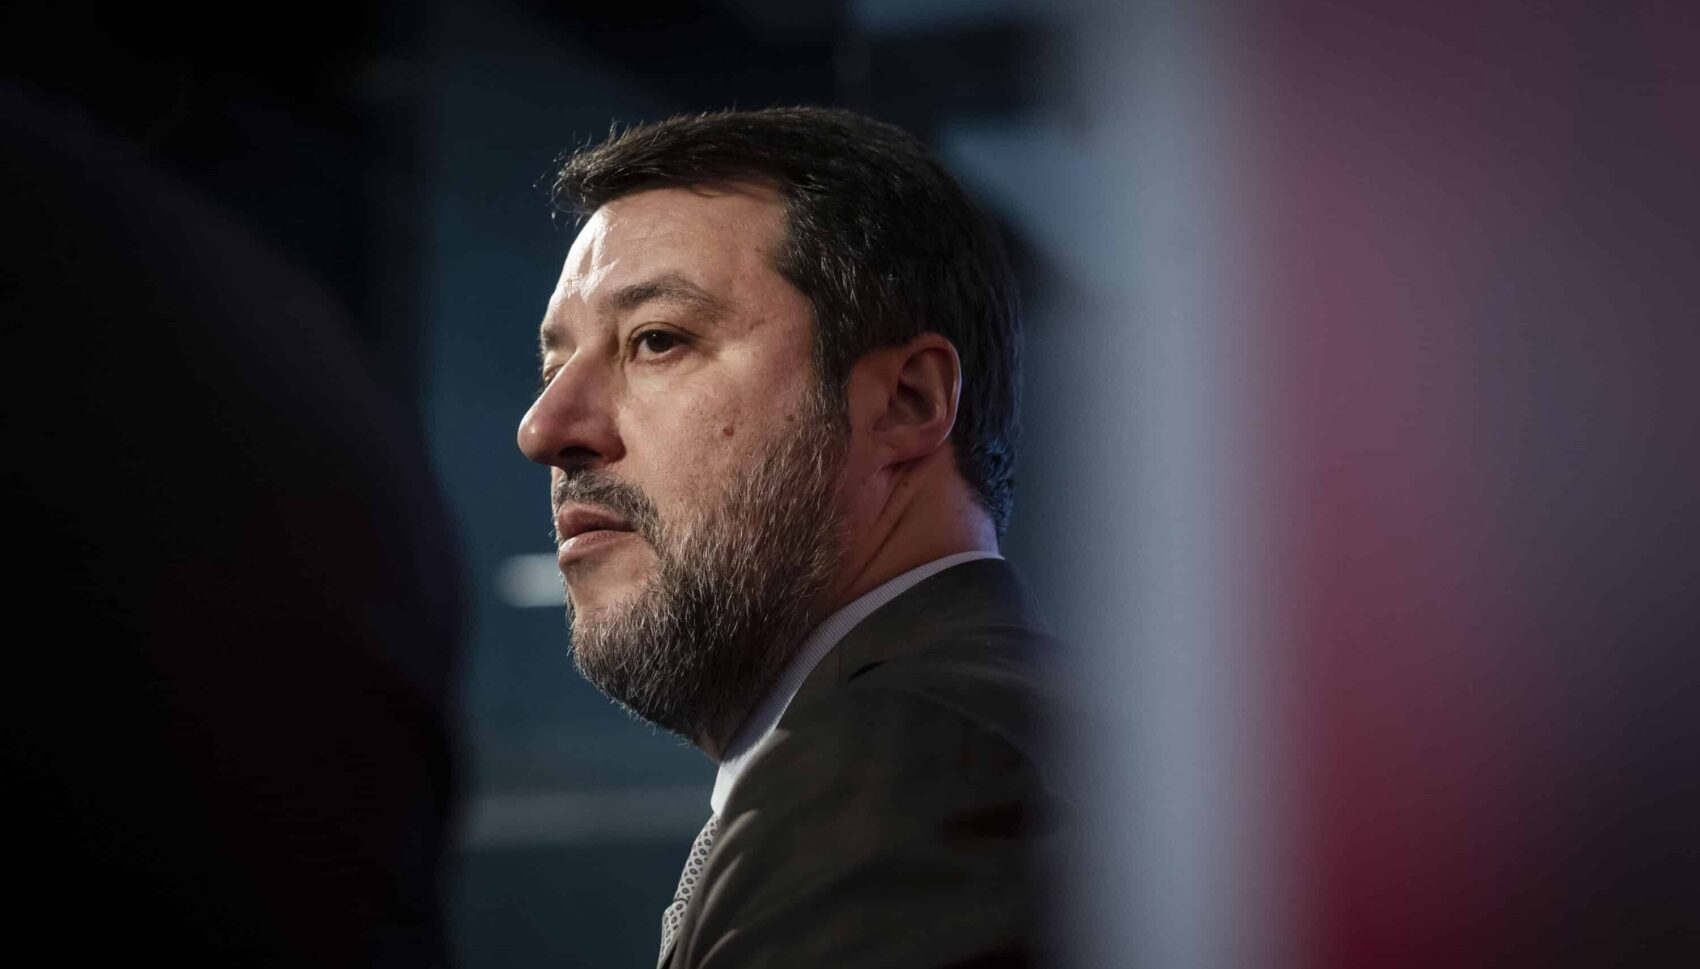 Bologna, Salvini pronto a cancellare il limite a 30 all’ora: annunciata una direttiva ministeriale